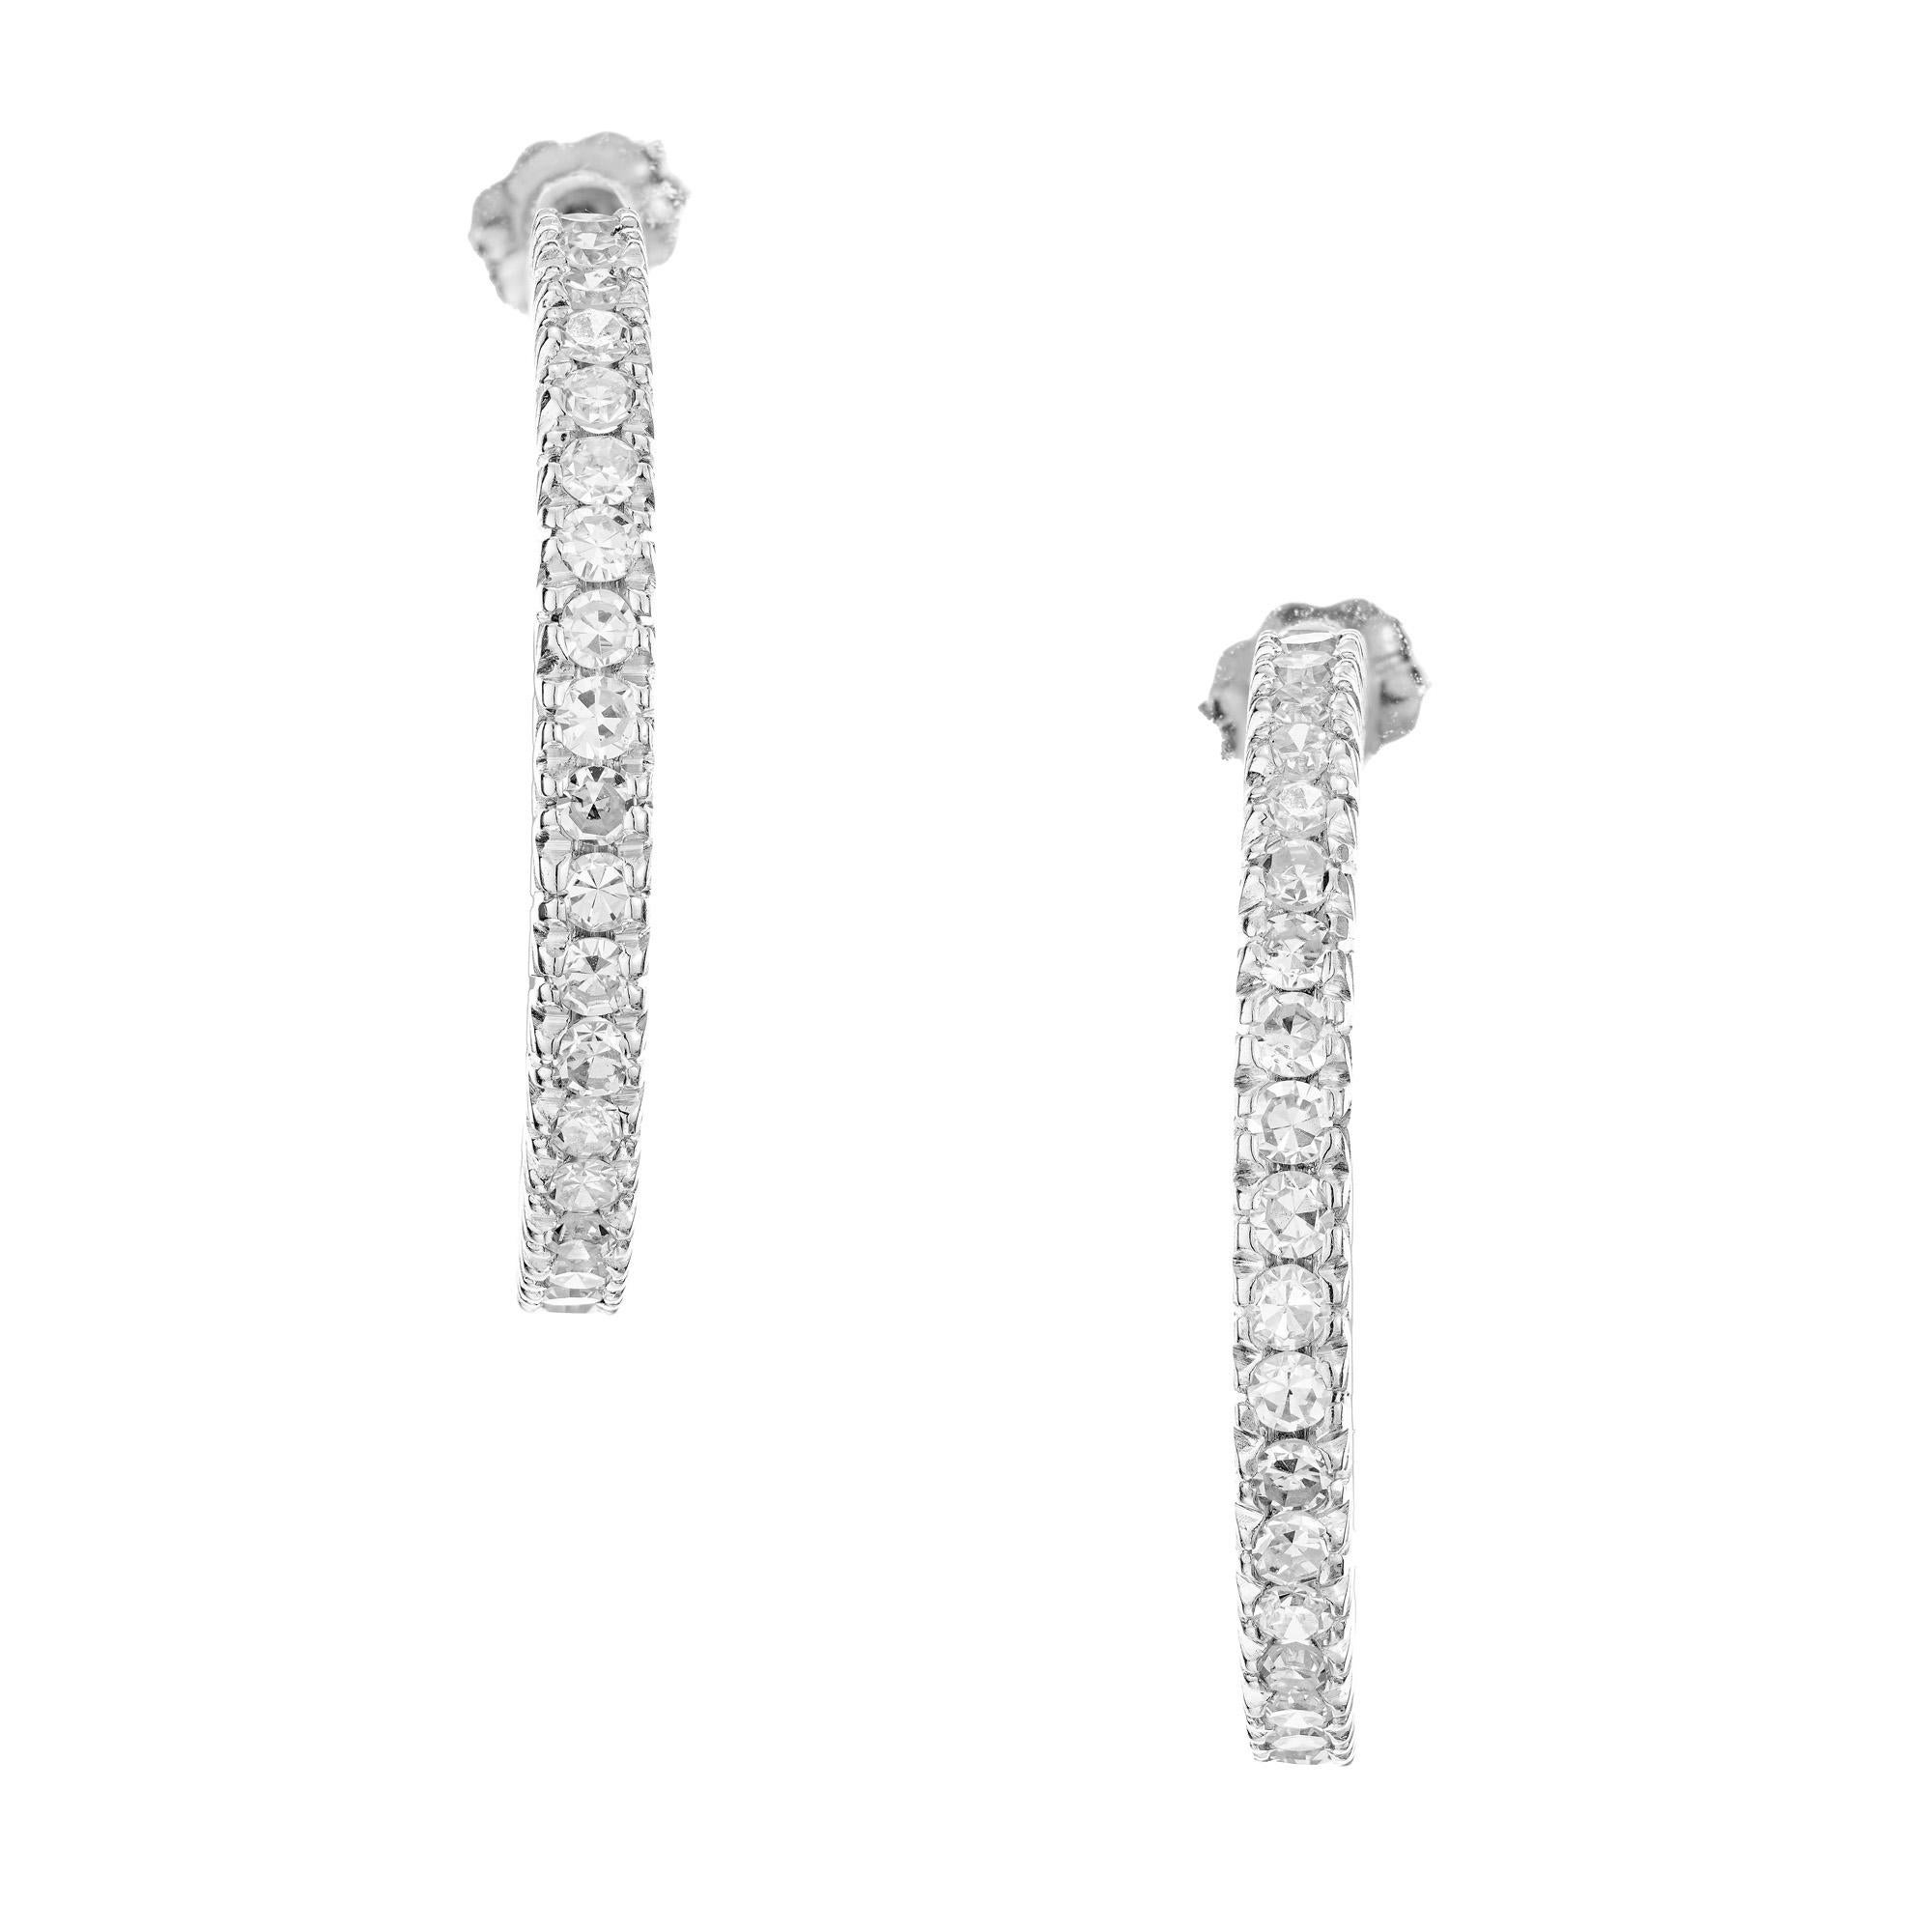 1960er Jahre Diamant-Platin-Ring-Ohrringe. Jeder Reif ist mit 31 runden Brillanten von insgesamt 1,50 Karat besetzt, die ein umwerfendes Funkeln erzeugen. Die Platinfassung verleiht diesen Ohrringen einen Hauch von Eleganz und Beständigkeit. Das